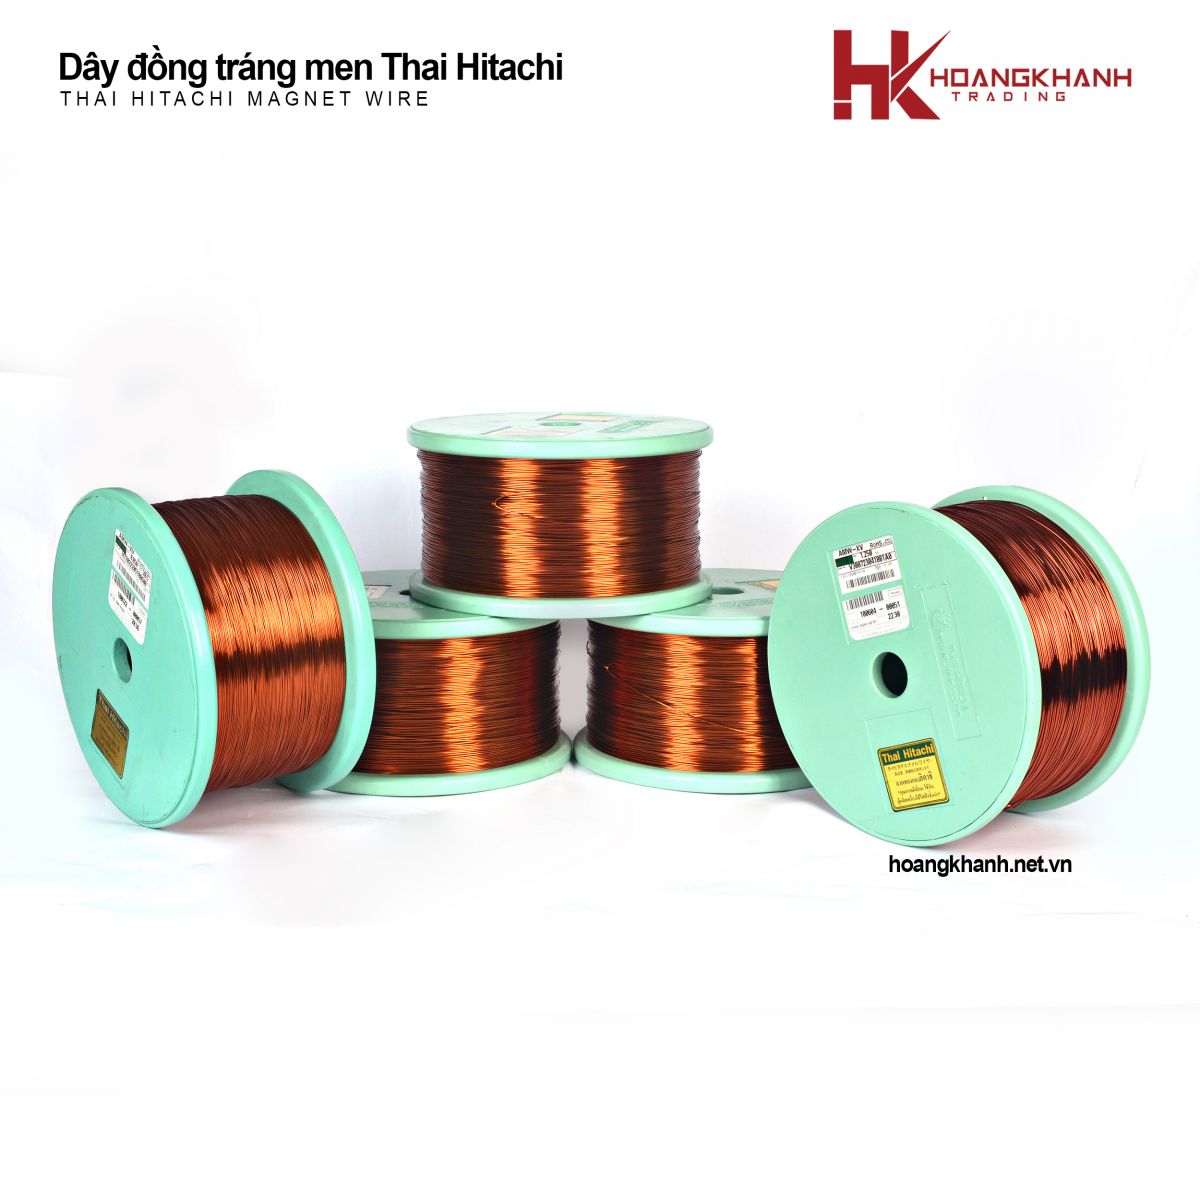 Enamelled Copper Wire Thai Hitachi 1AMW-XV